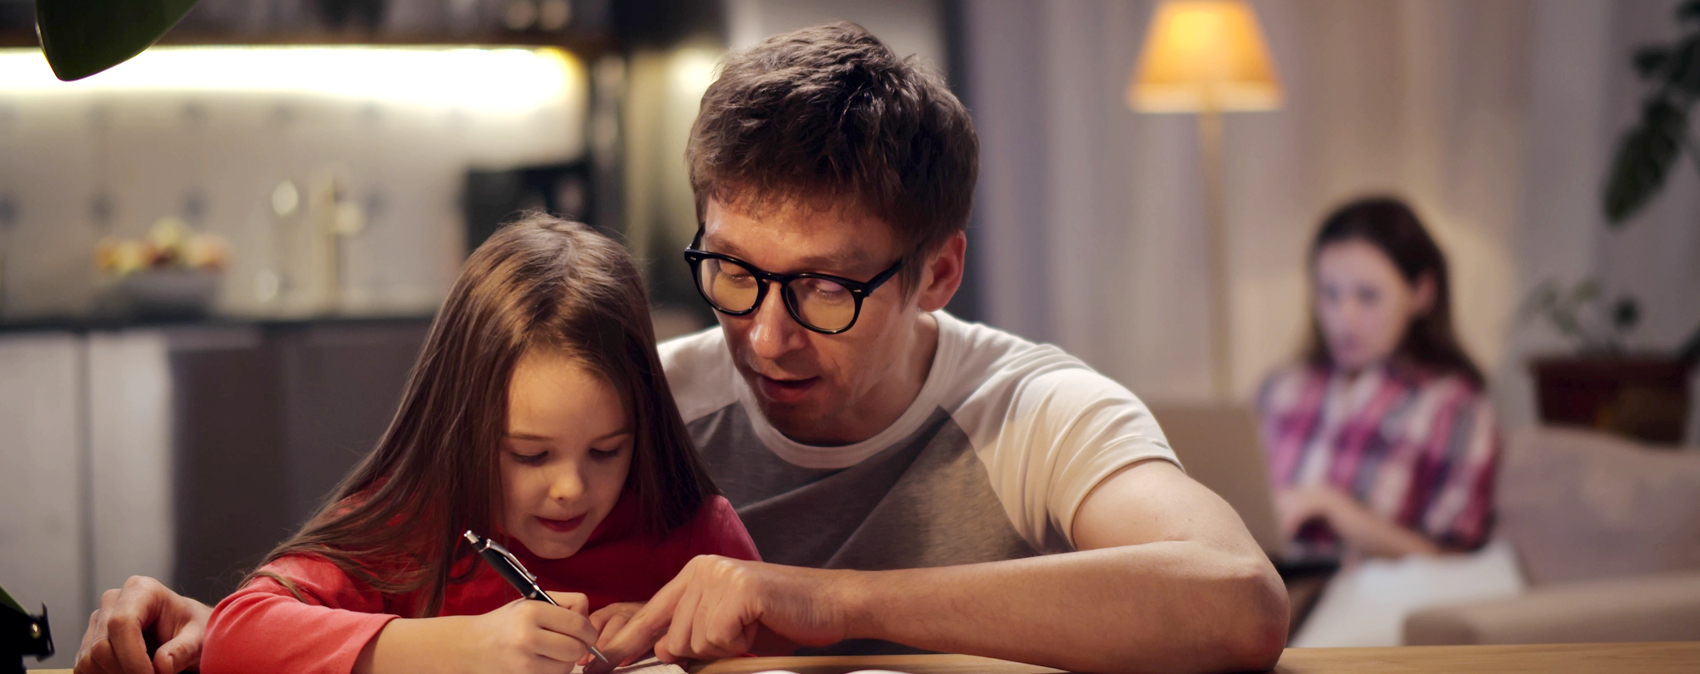 Ein Vater hilft abends seiner kleinen Tochter bei Hausaufgaben